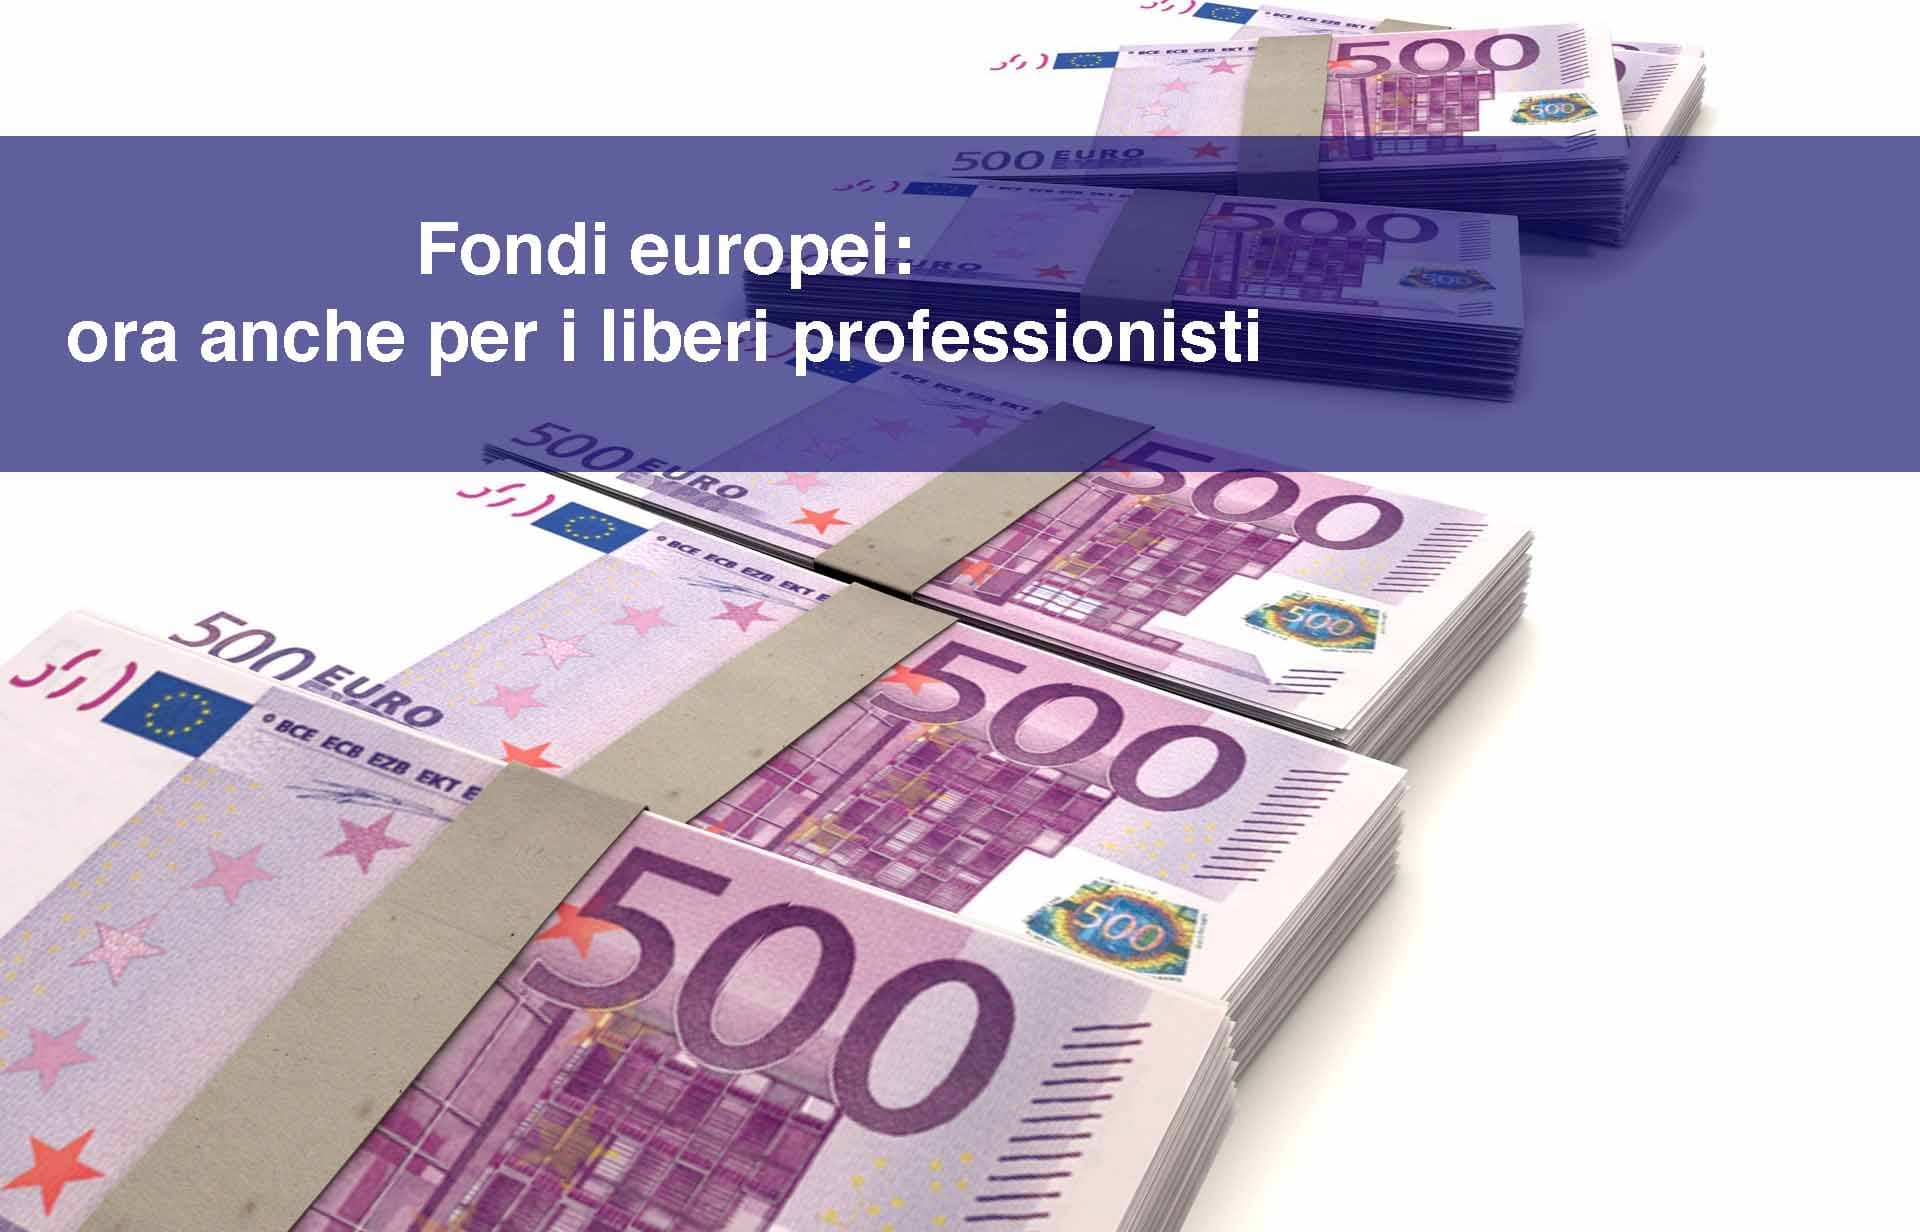 Fondi europei: ora anche per i liberi professionisti